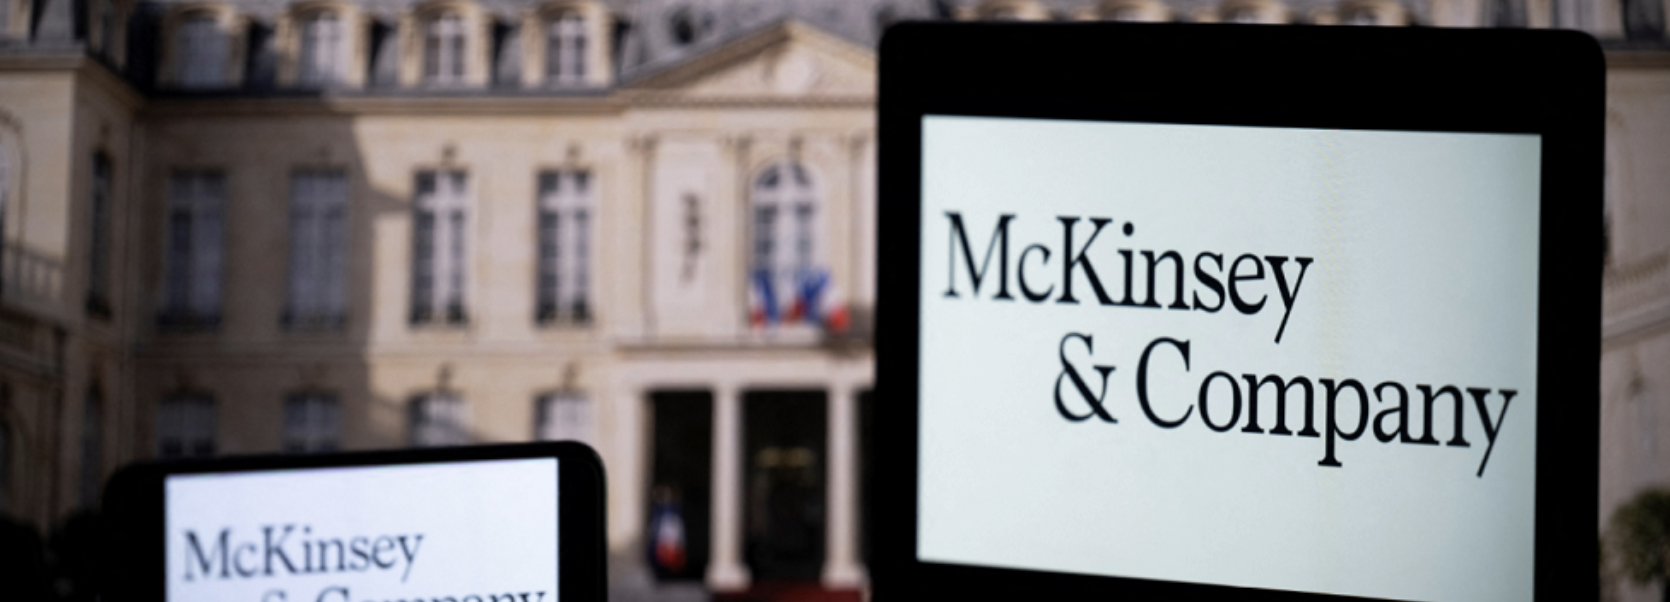 Soupçons de fraude fiscale : le siège de McKinsey perquisitionné à Paris